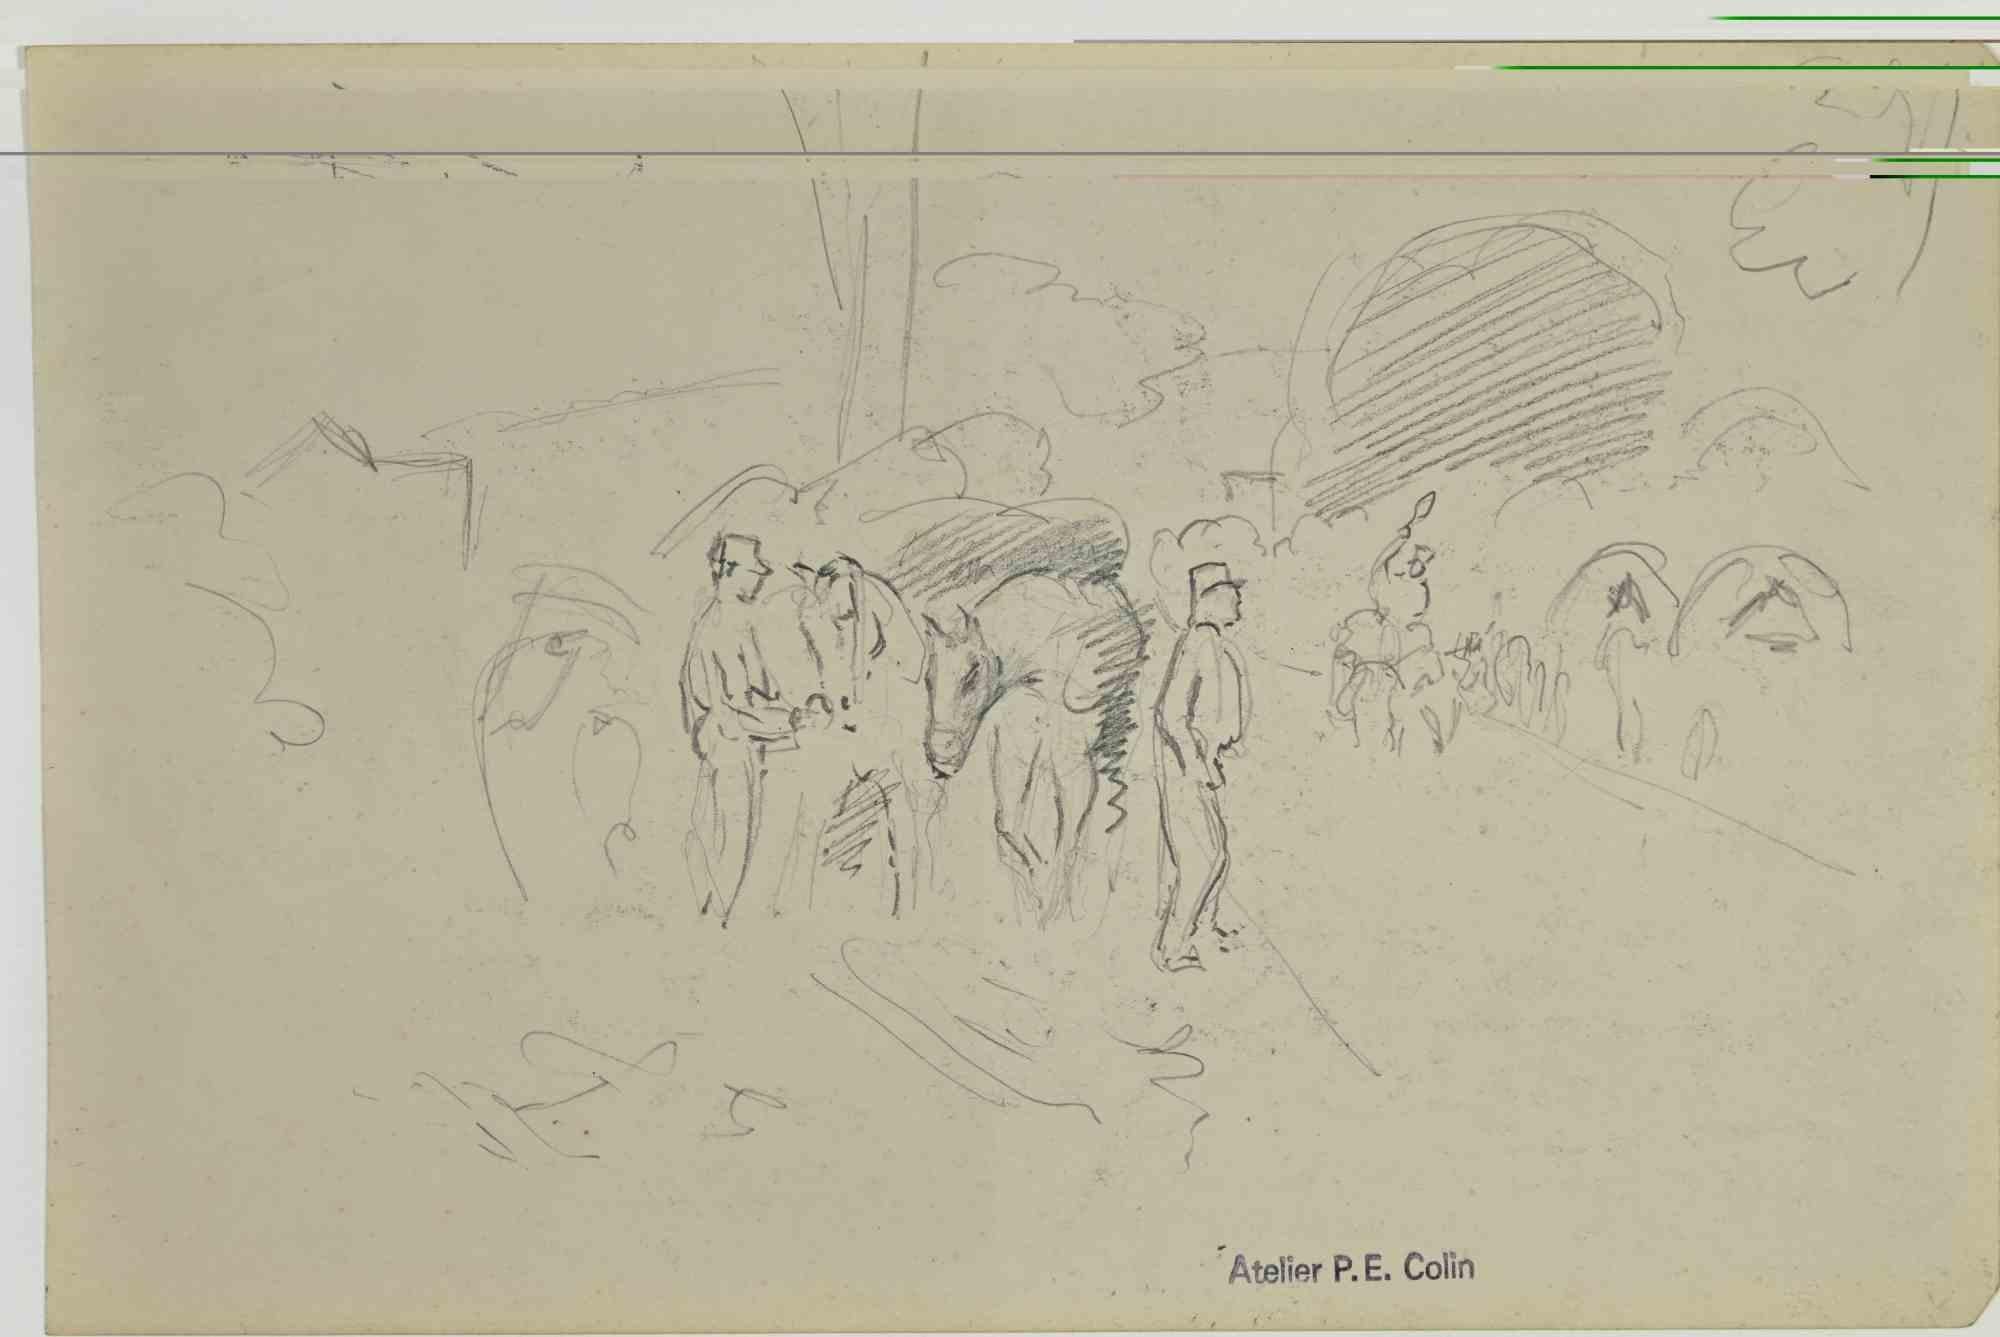 Soldaten im Lager ist eine Zeichnung von Paul Emile Colin aus dem frühen 20. Jahrhundert.

Kohlestift auf elfenbeinfarbenem Papier

Auf der Unterseite gestempelt.

Guter Zustand mit leichten Stockflecken.

Das Kunstwerk wird durch geschickte